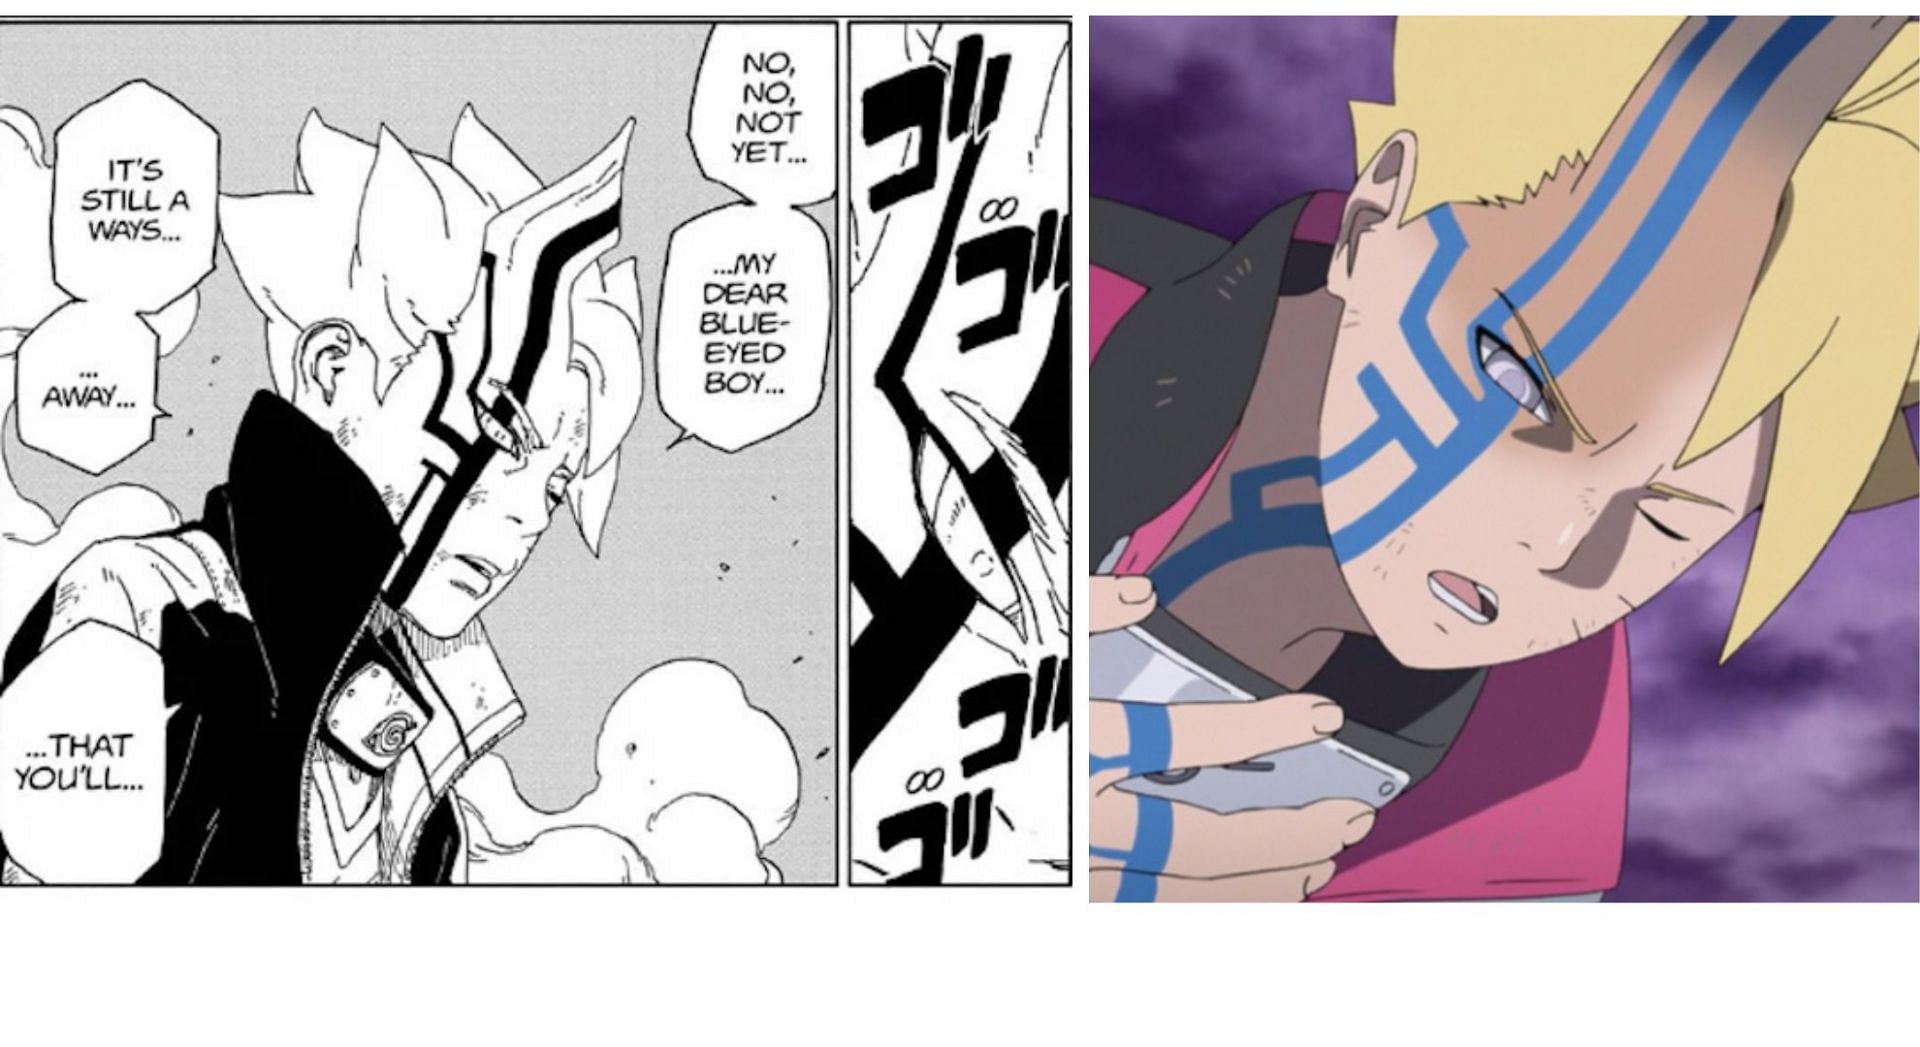 Manga version and anime version (Image via sportskeeda)